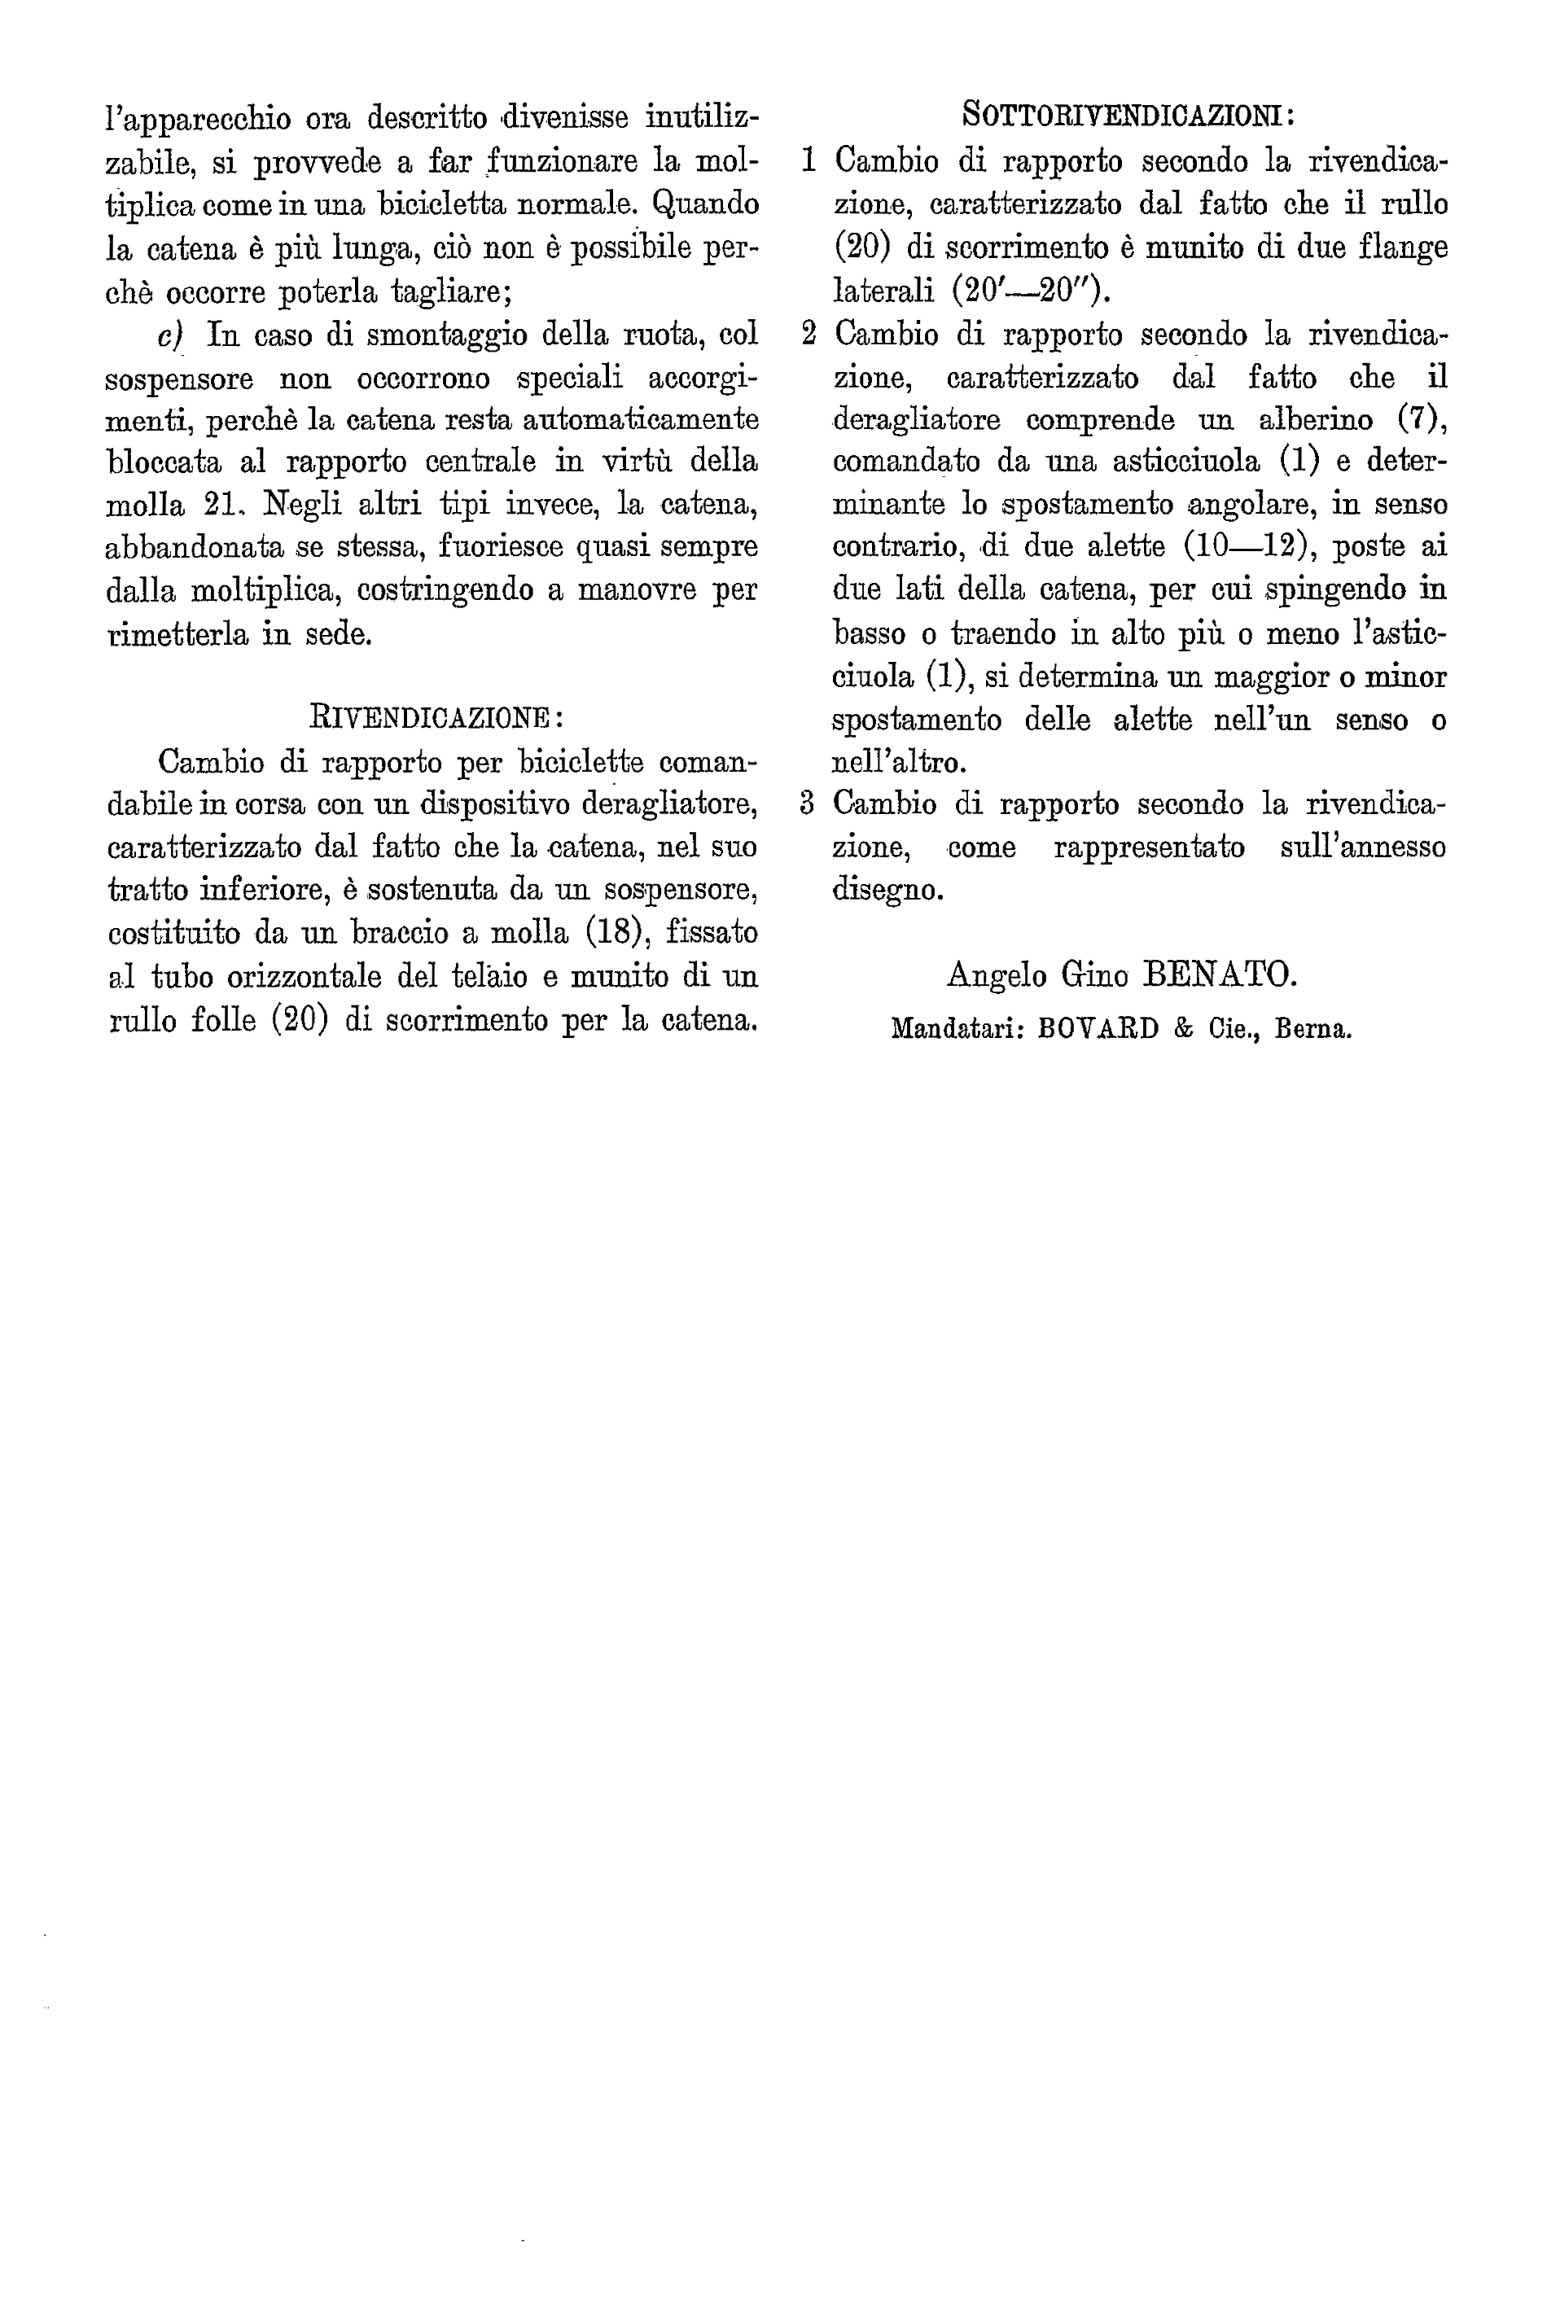 Swiss Patent 212,553 - Benato scan 03 main image